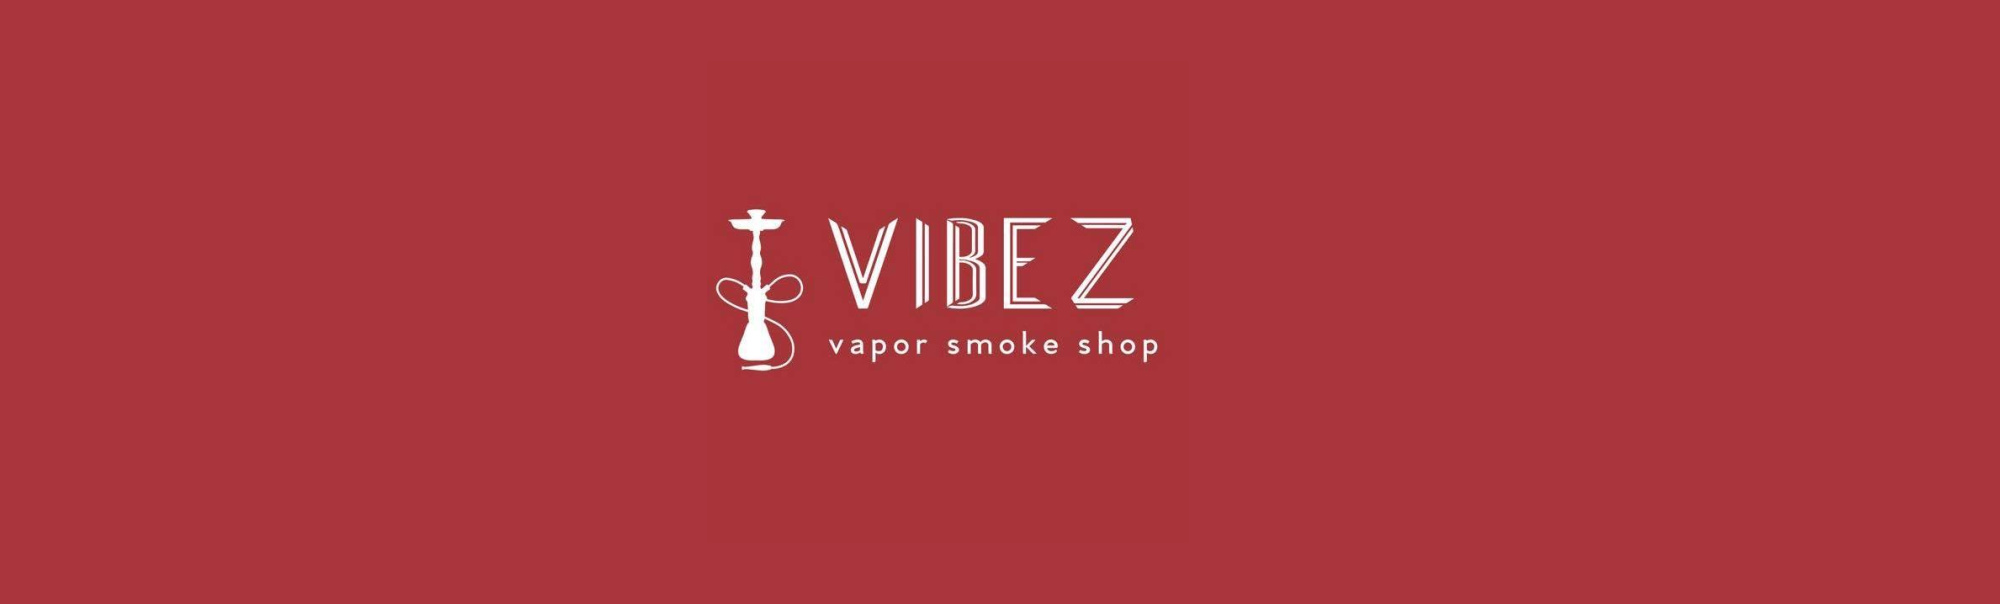 image of vibez vapor 4 in st petesburg fl